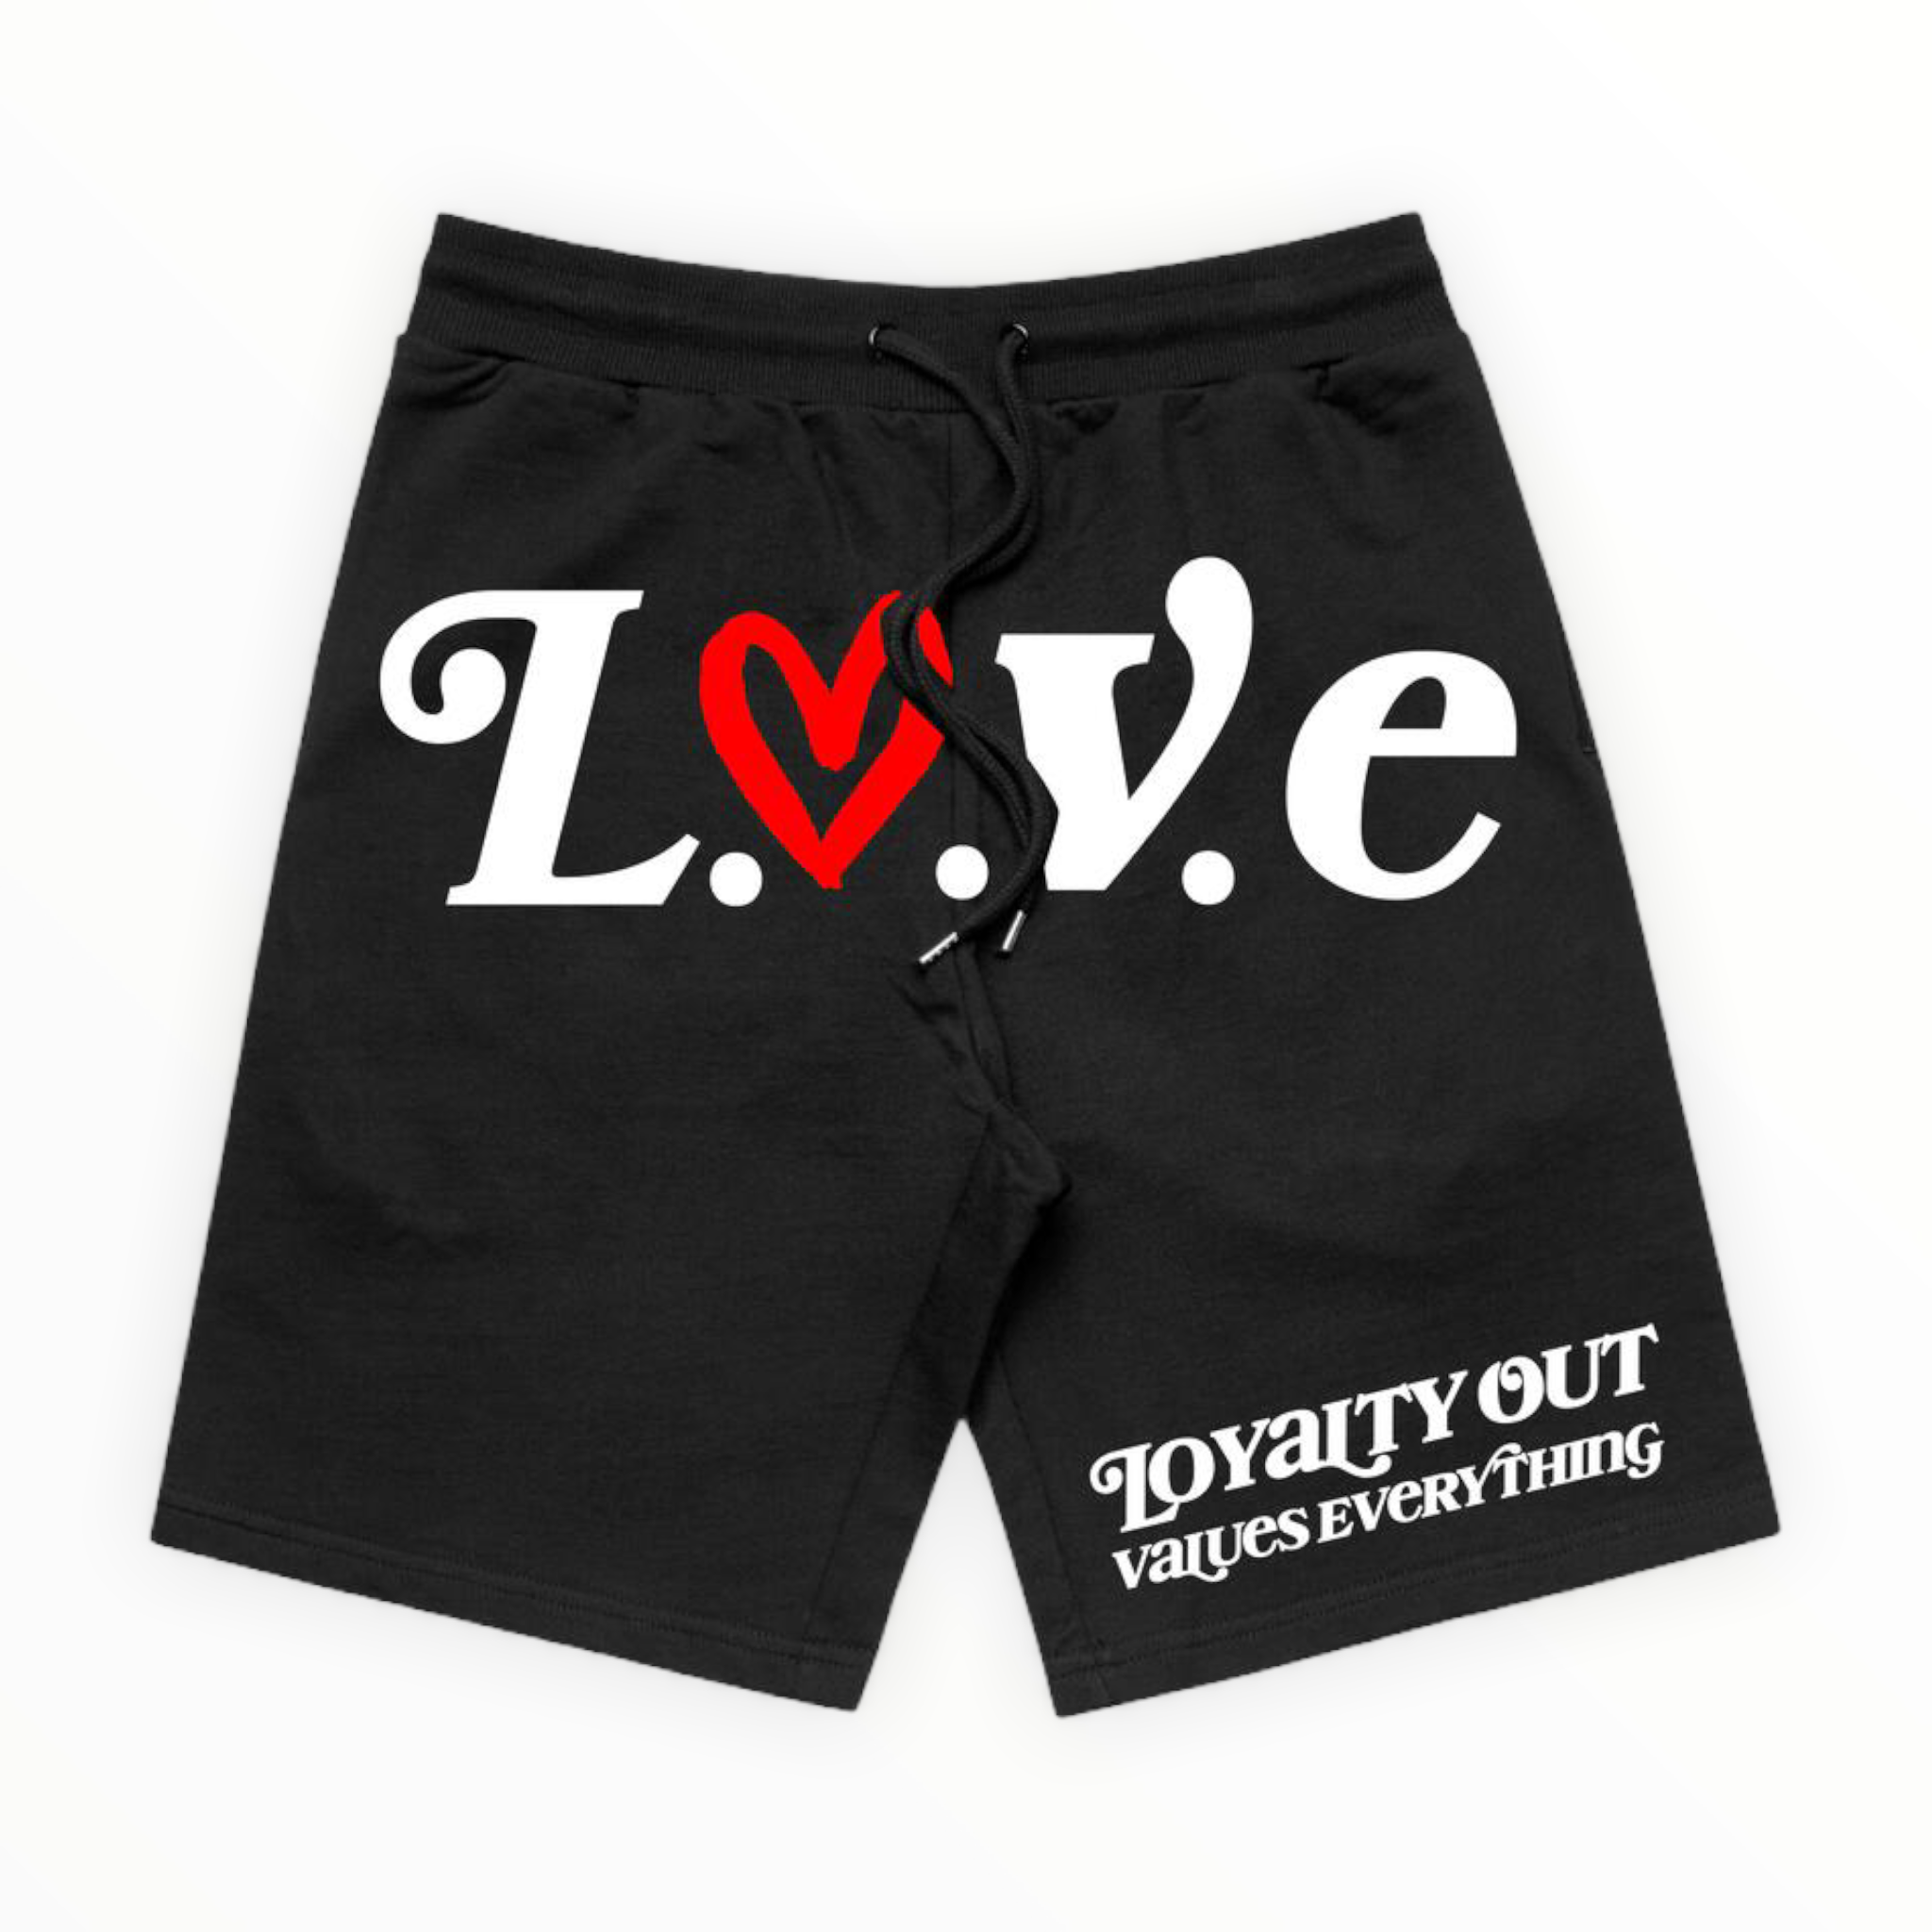 L.O.V.E: L.O.V.E. Shorts